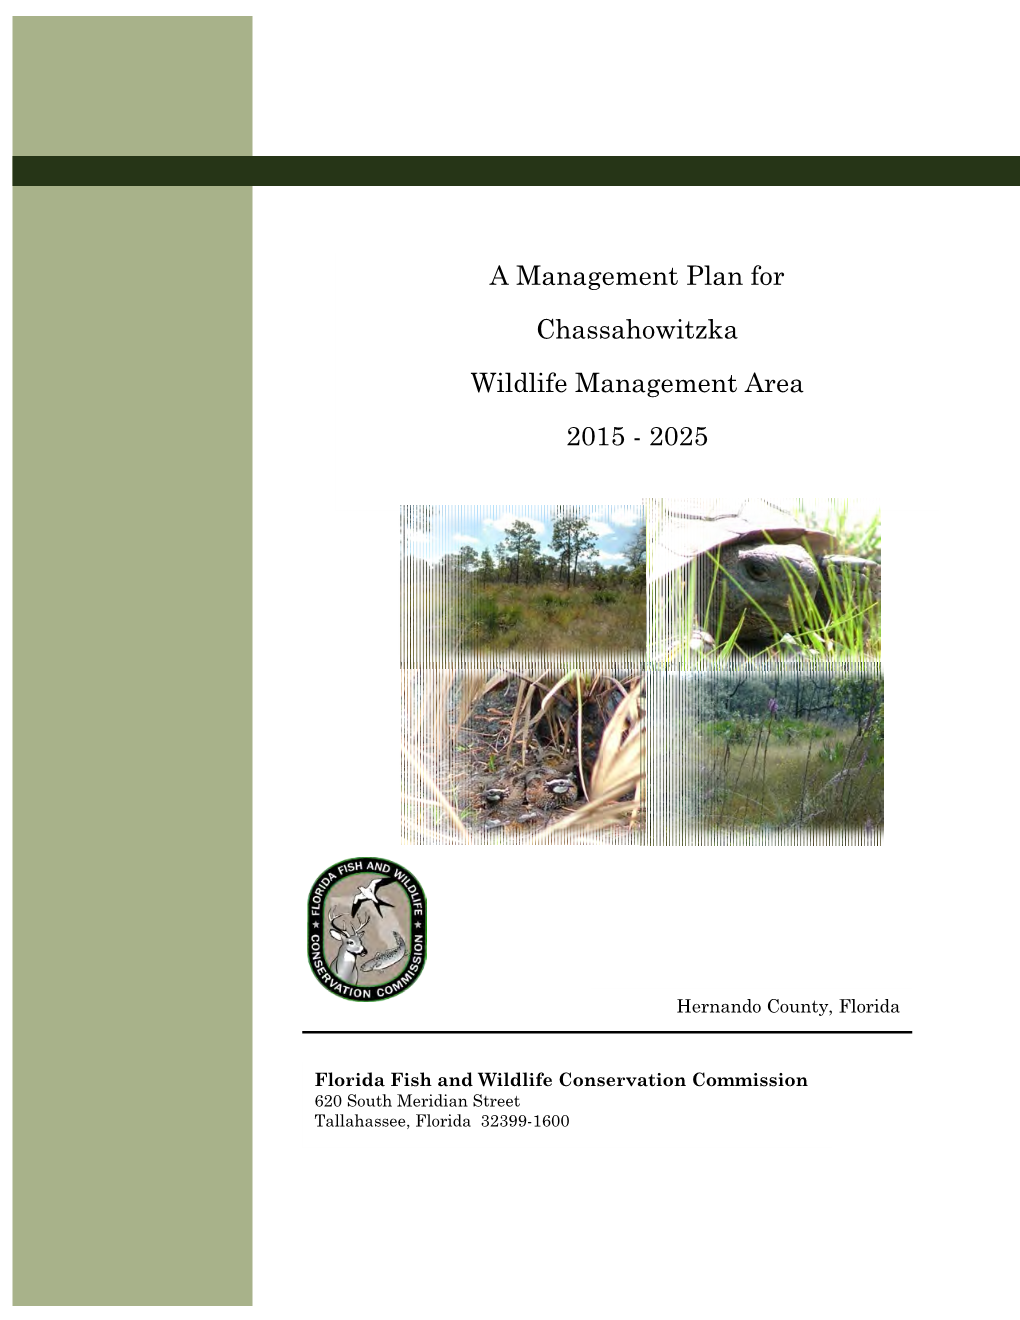 Management Plan for Chassahowitzka Wildlife Management Area